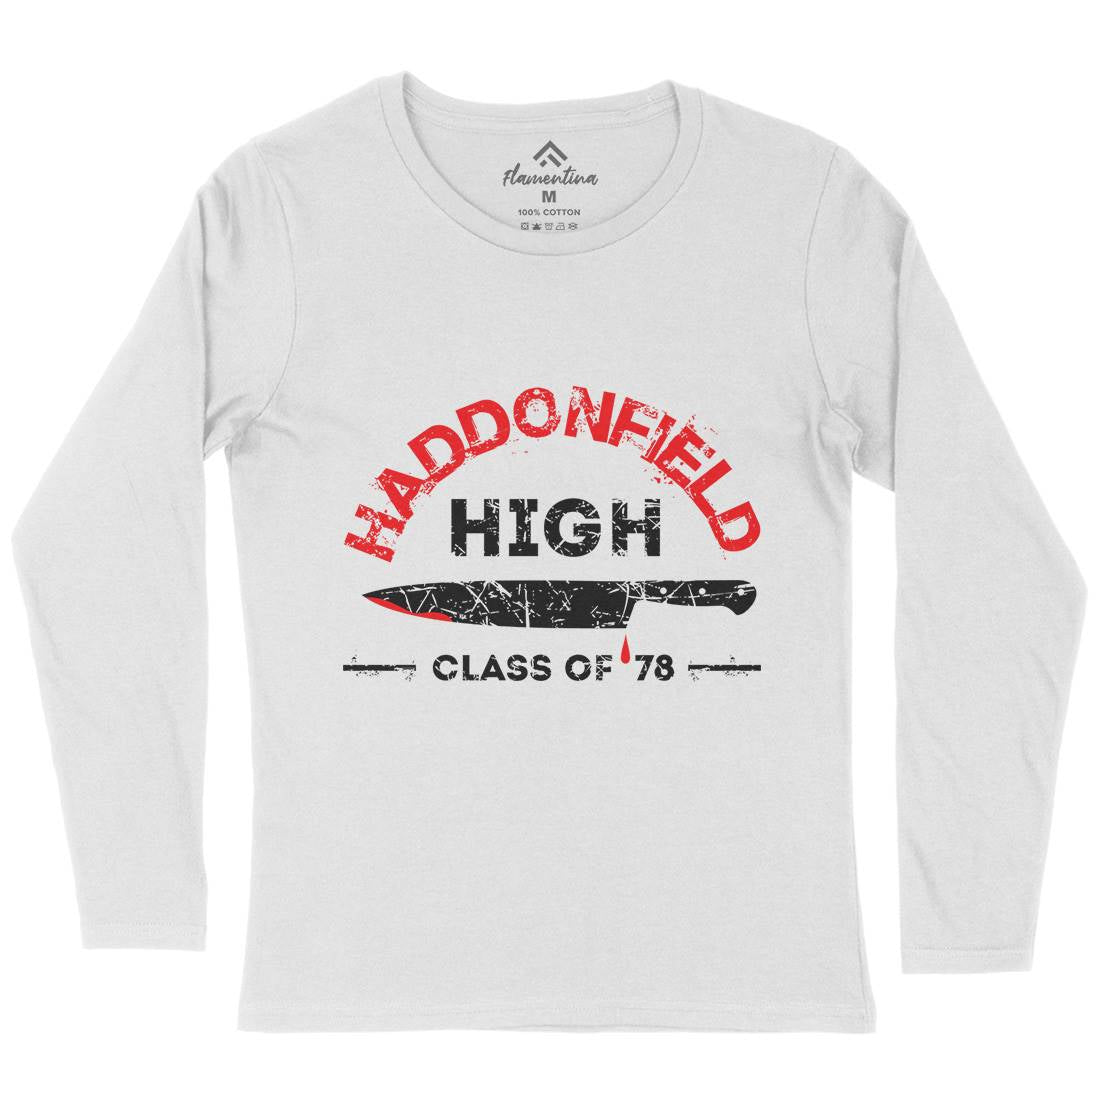 Haddonfield High Womens Long Sleeve T-Shirt Horror D371